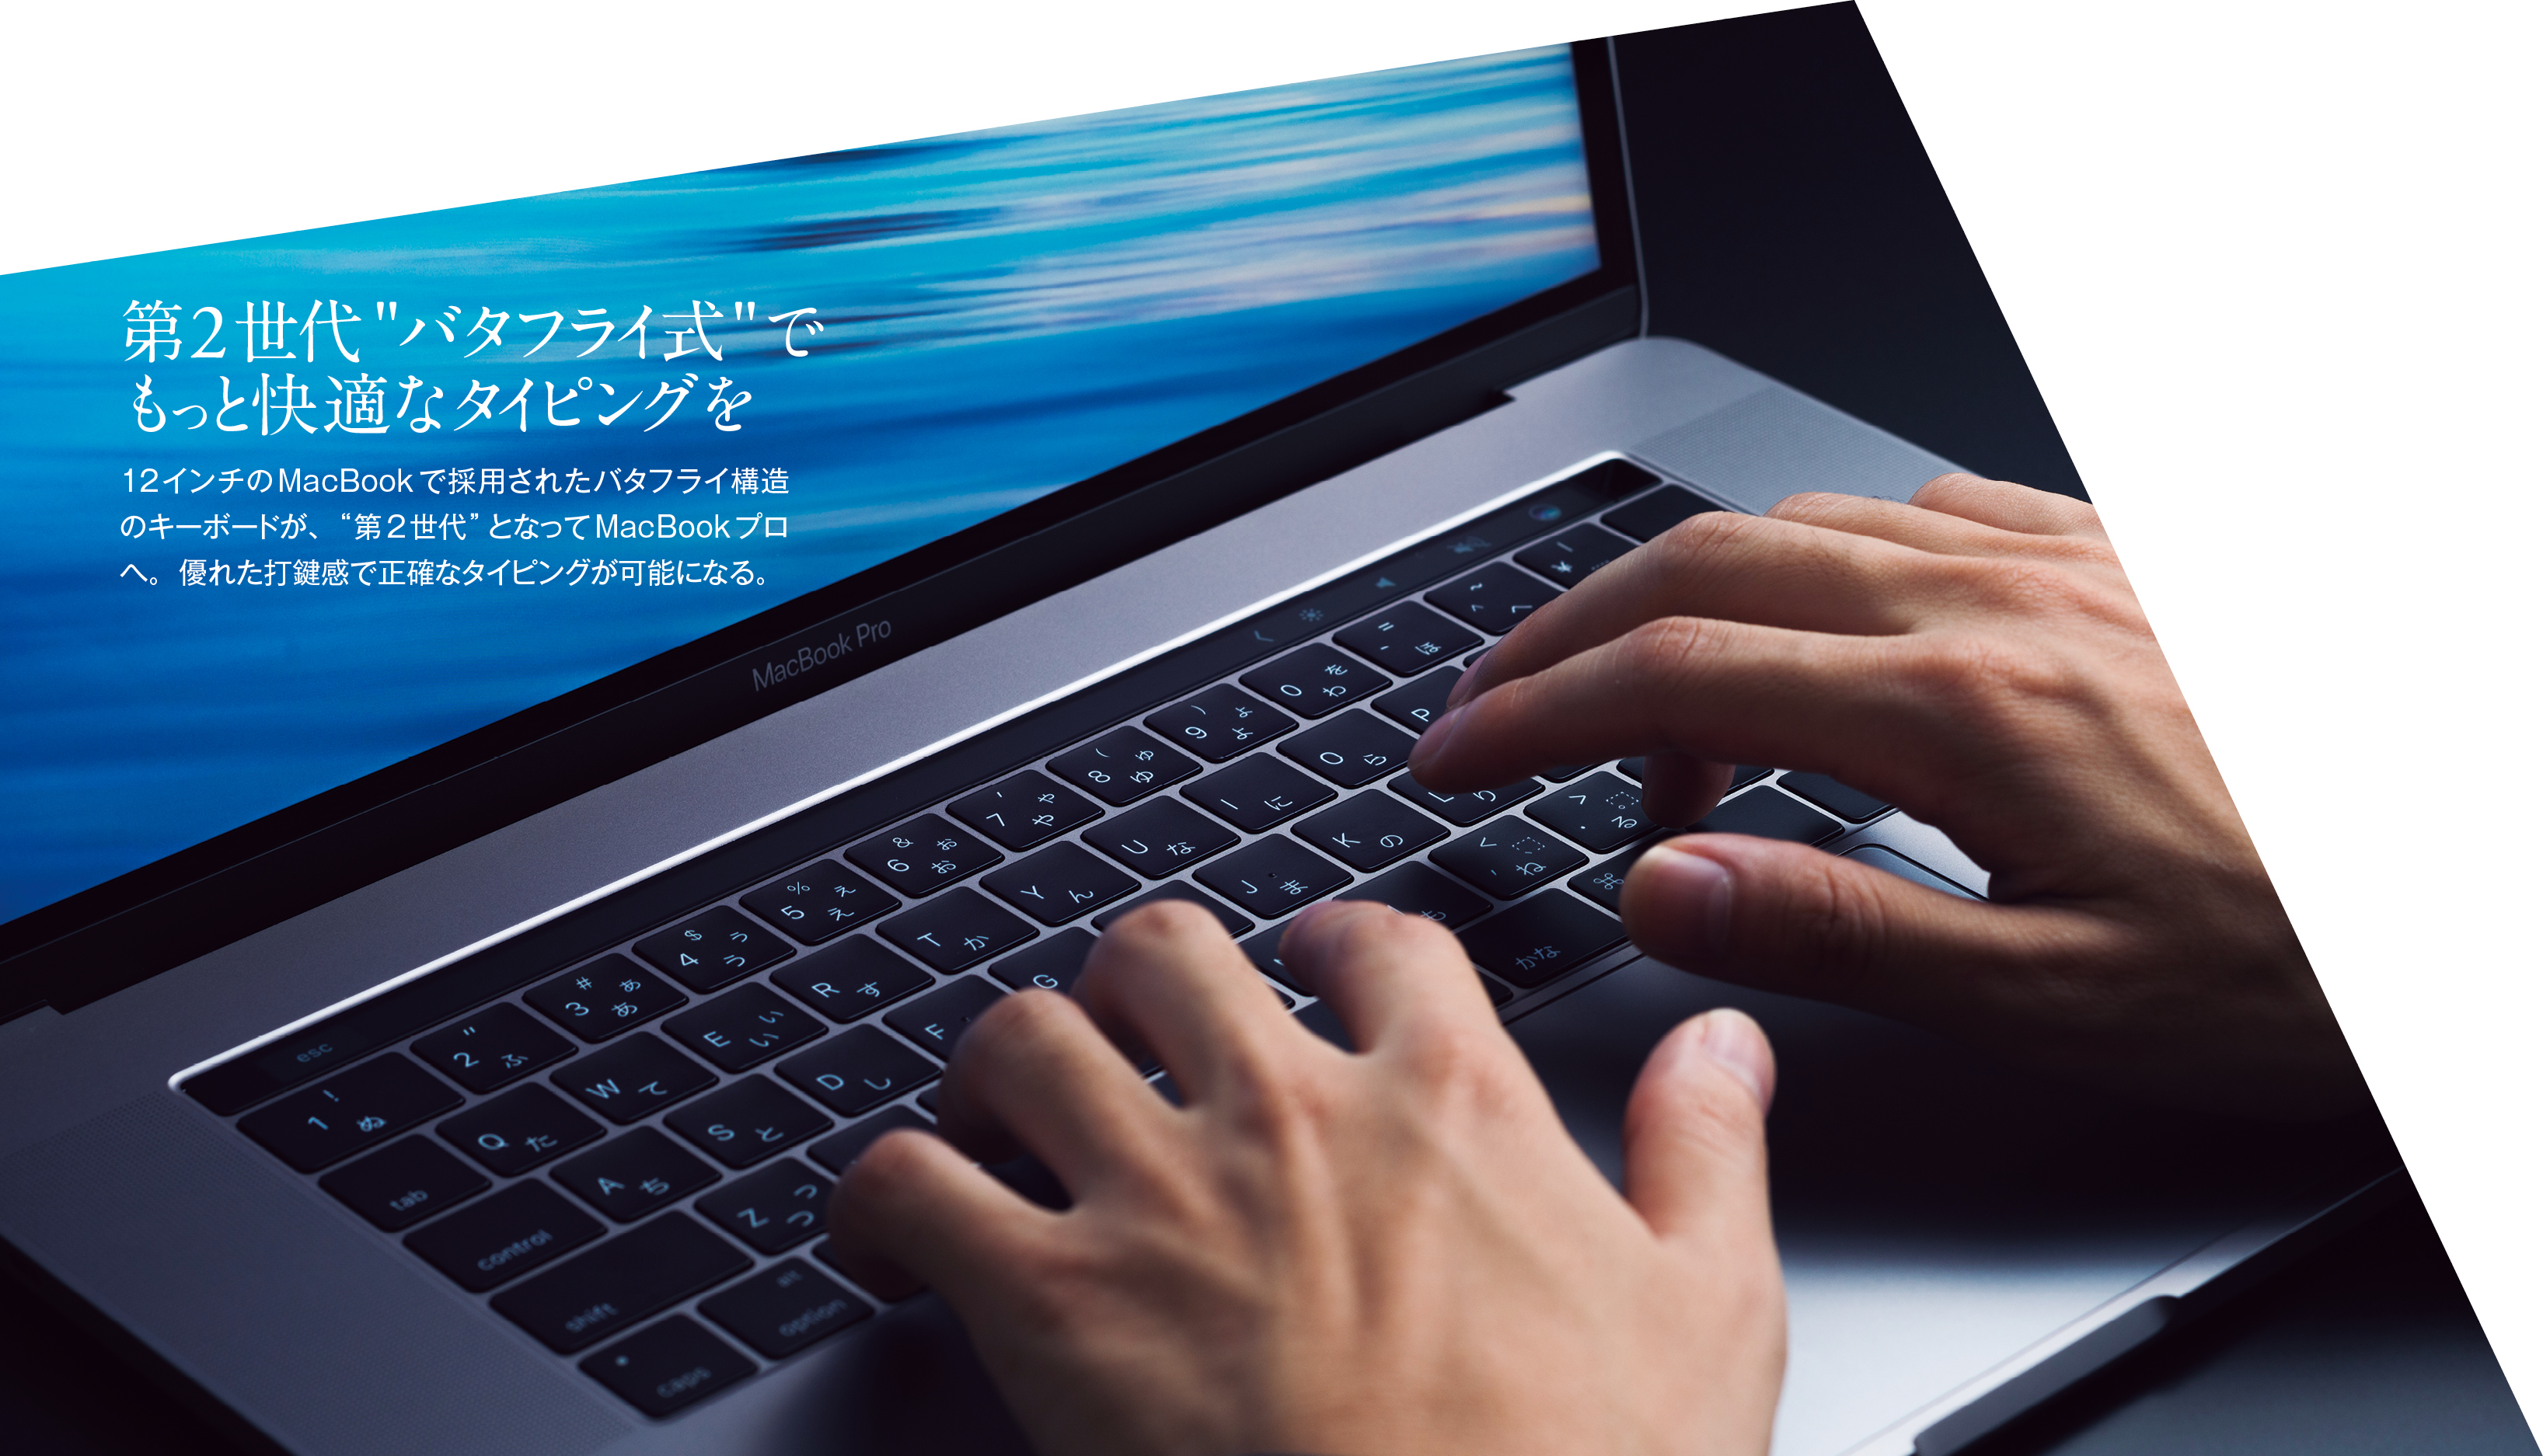 オススメ】MacBook Pro Apple ノートパソコン 事務作業などに - PC